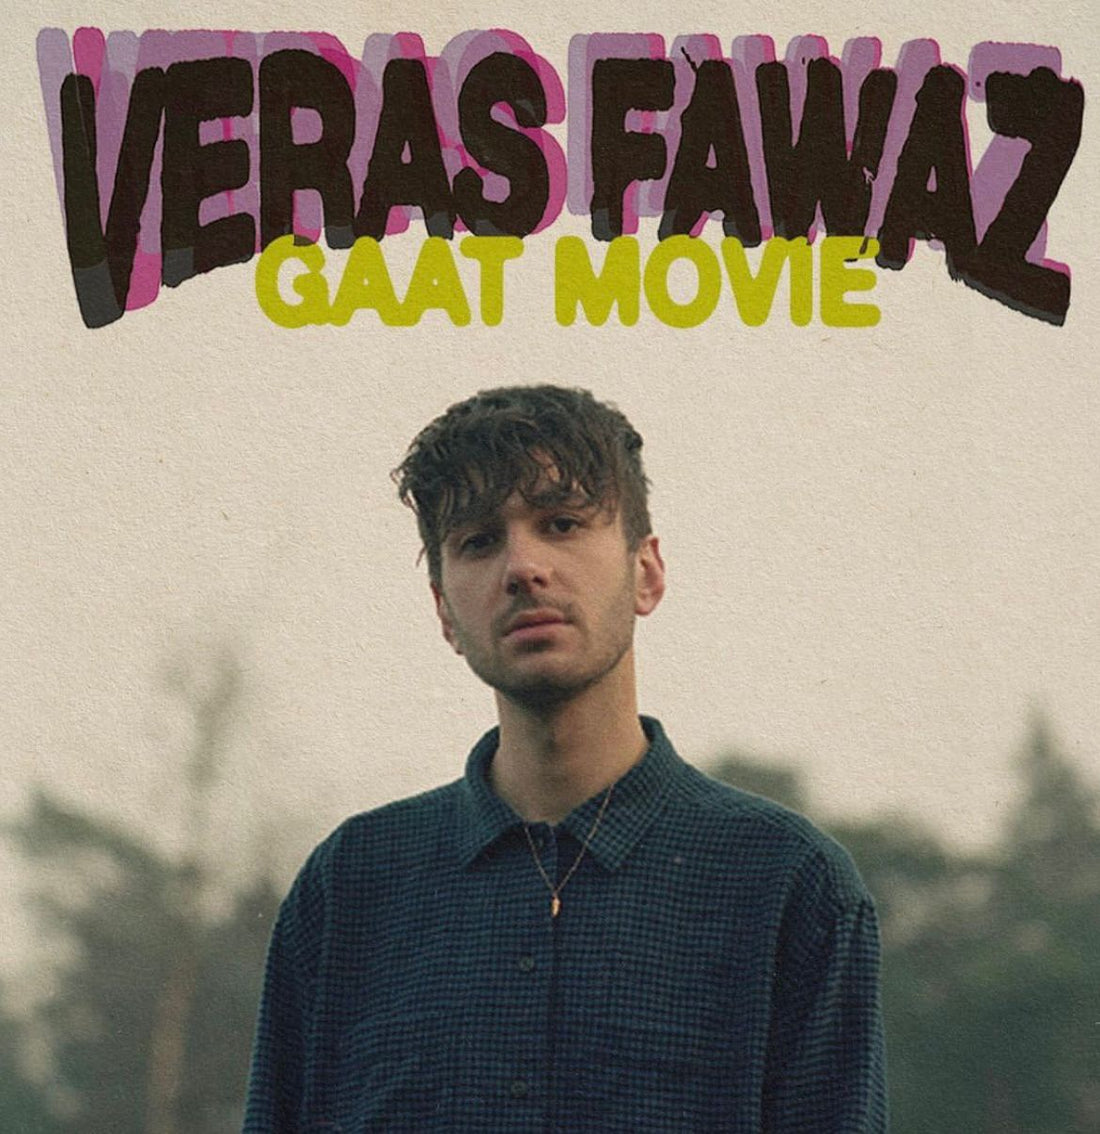 Gaat Movie | Veras Fawaz